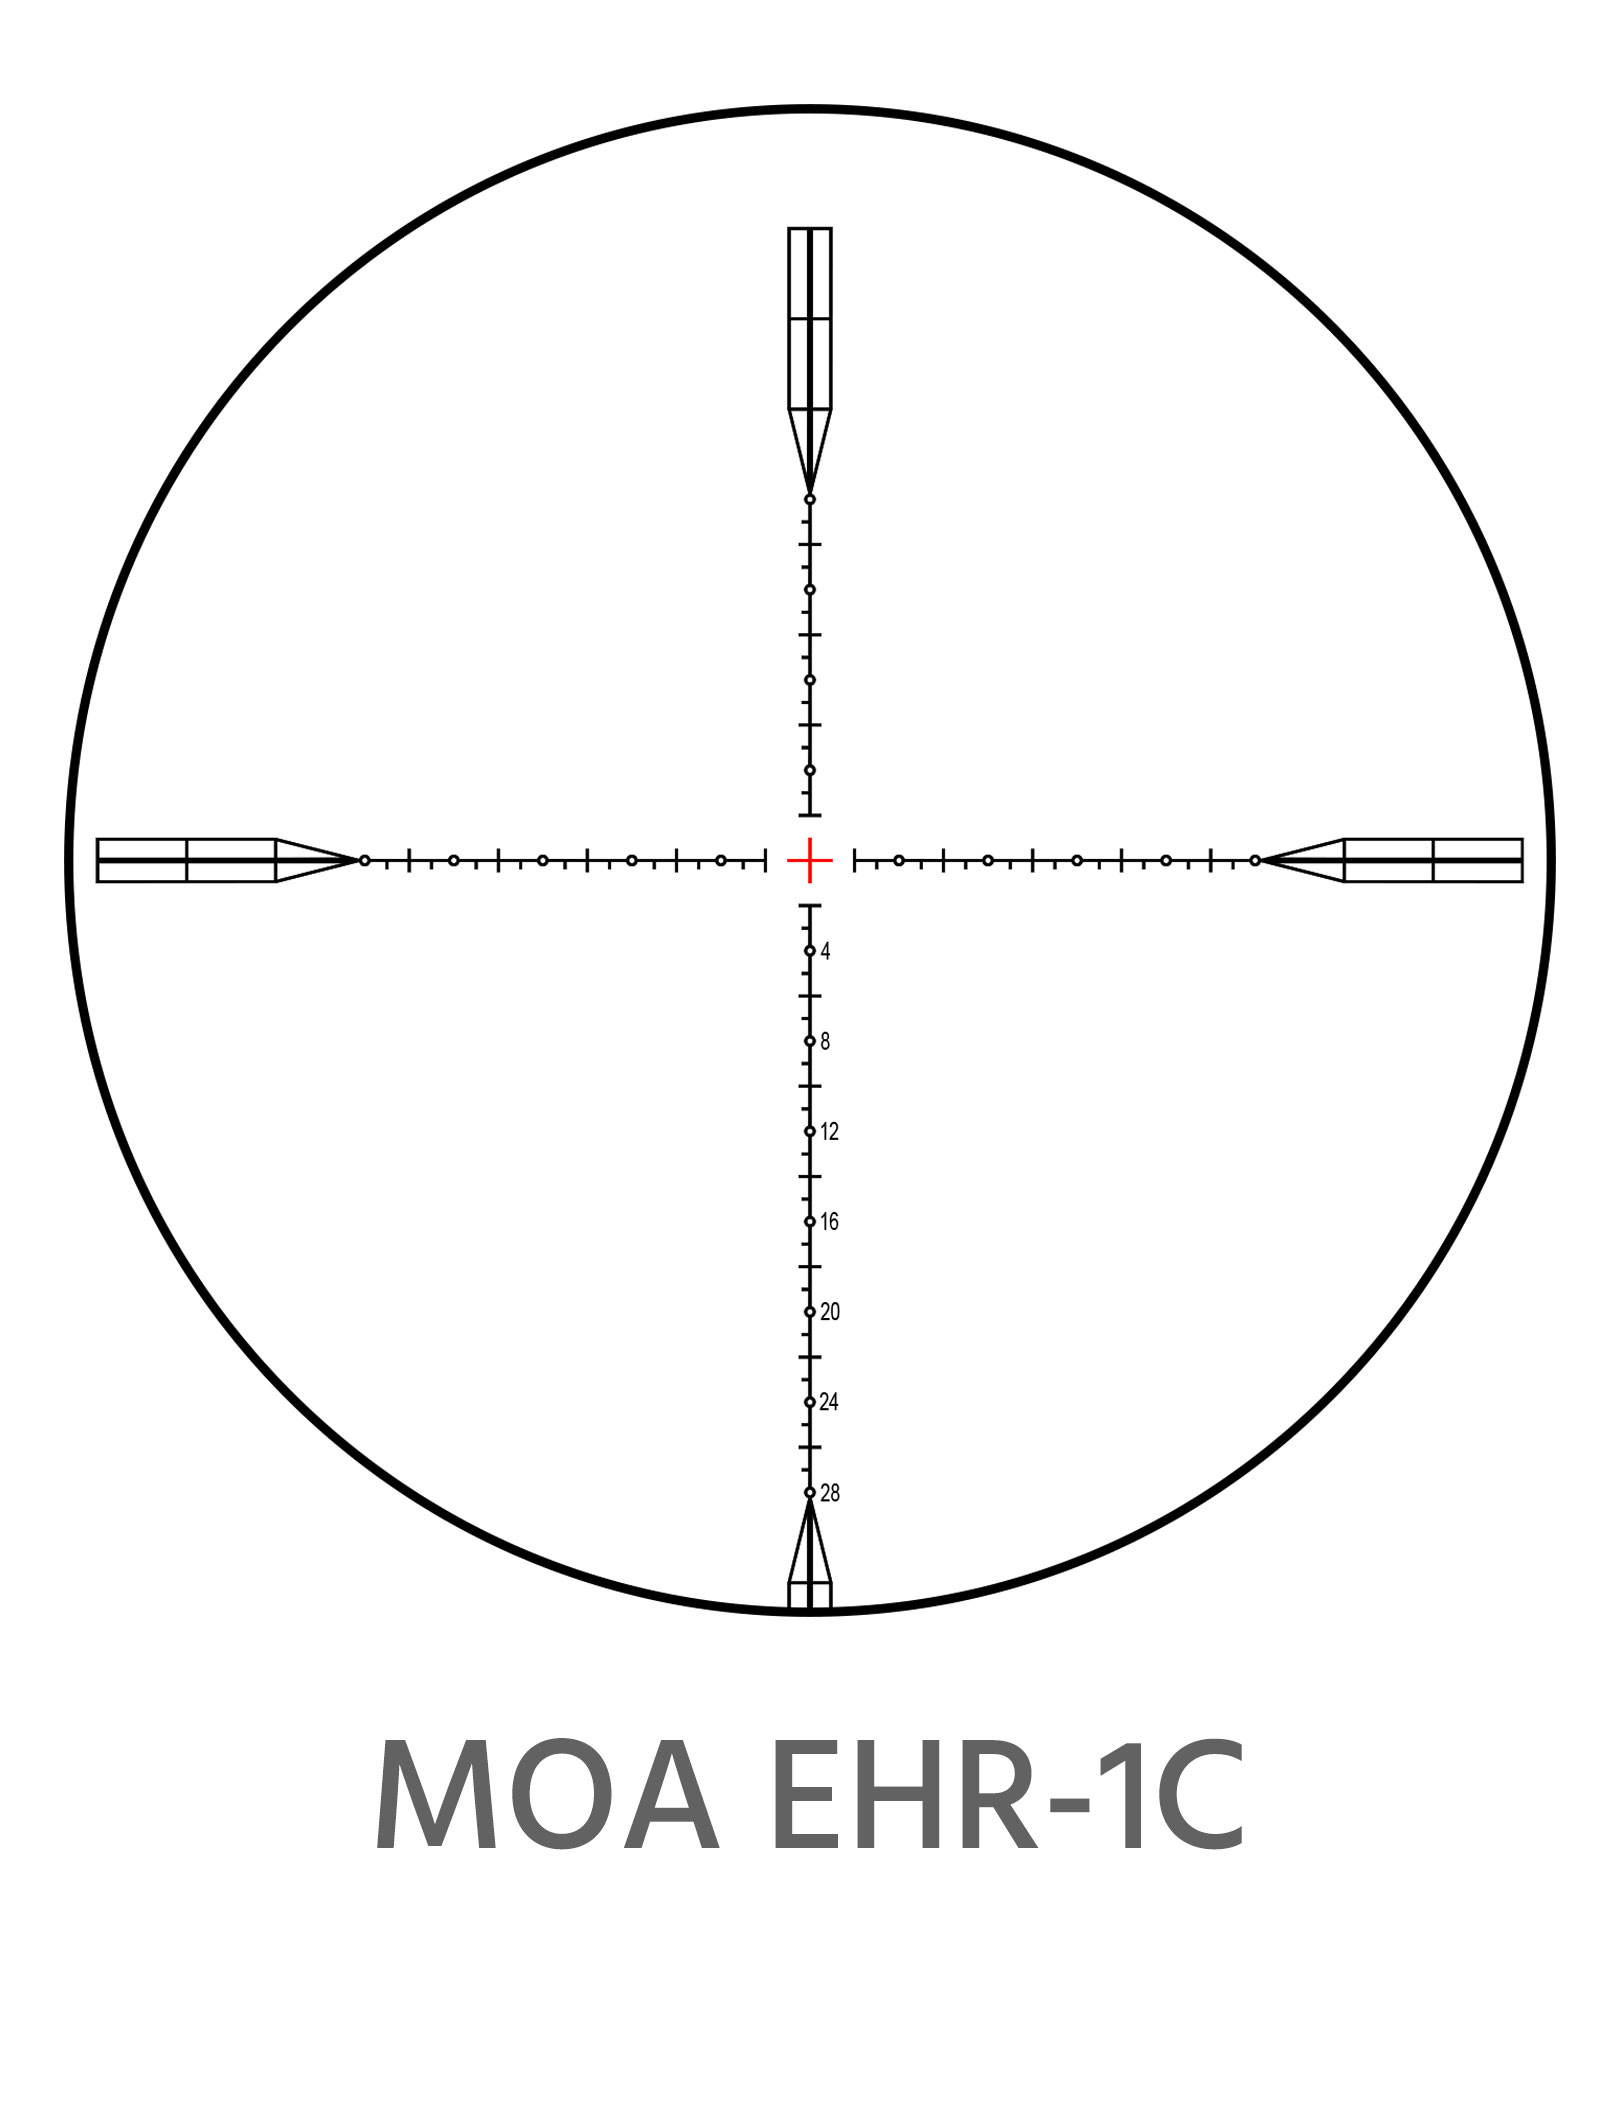 MOA EHR-1C